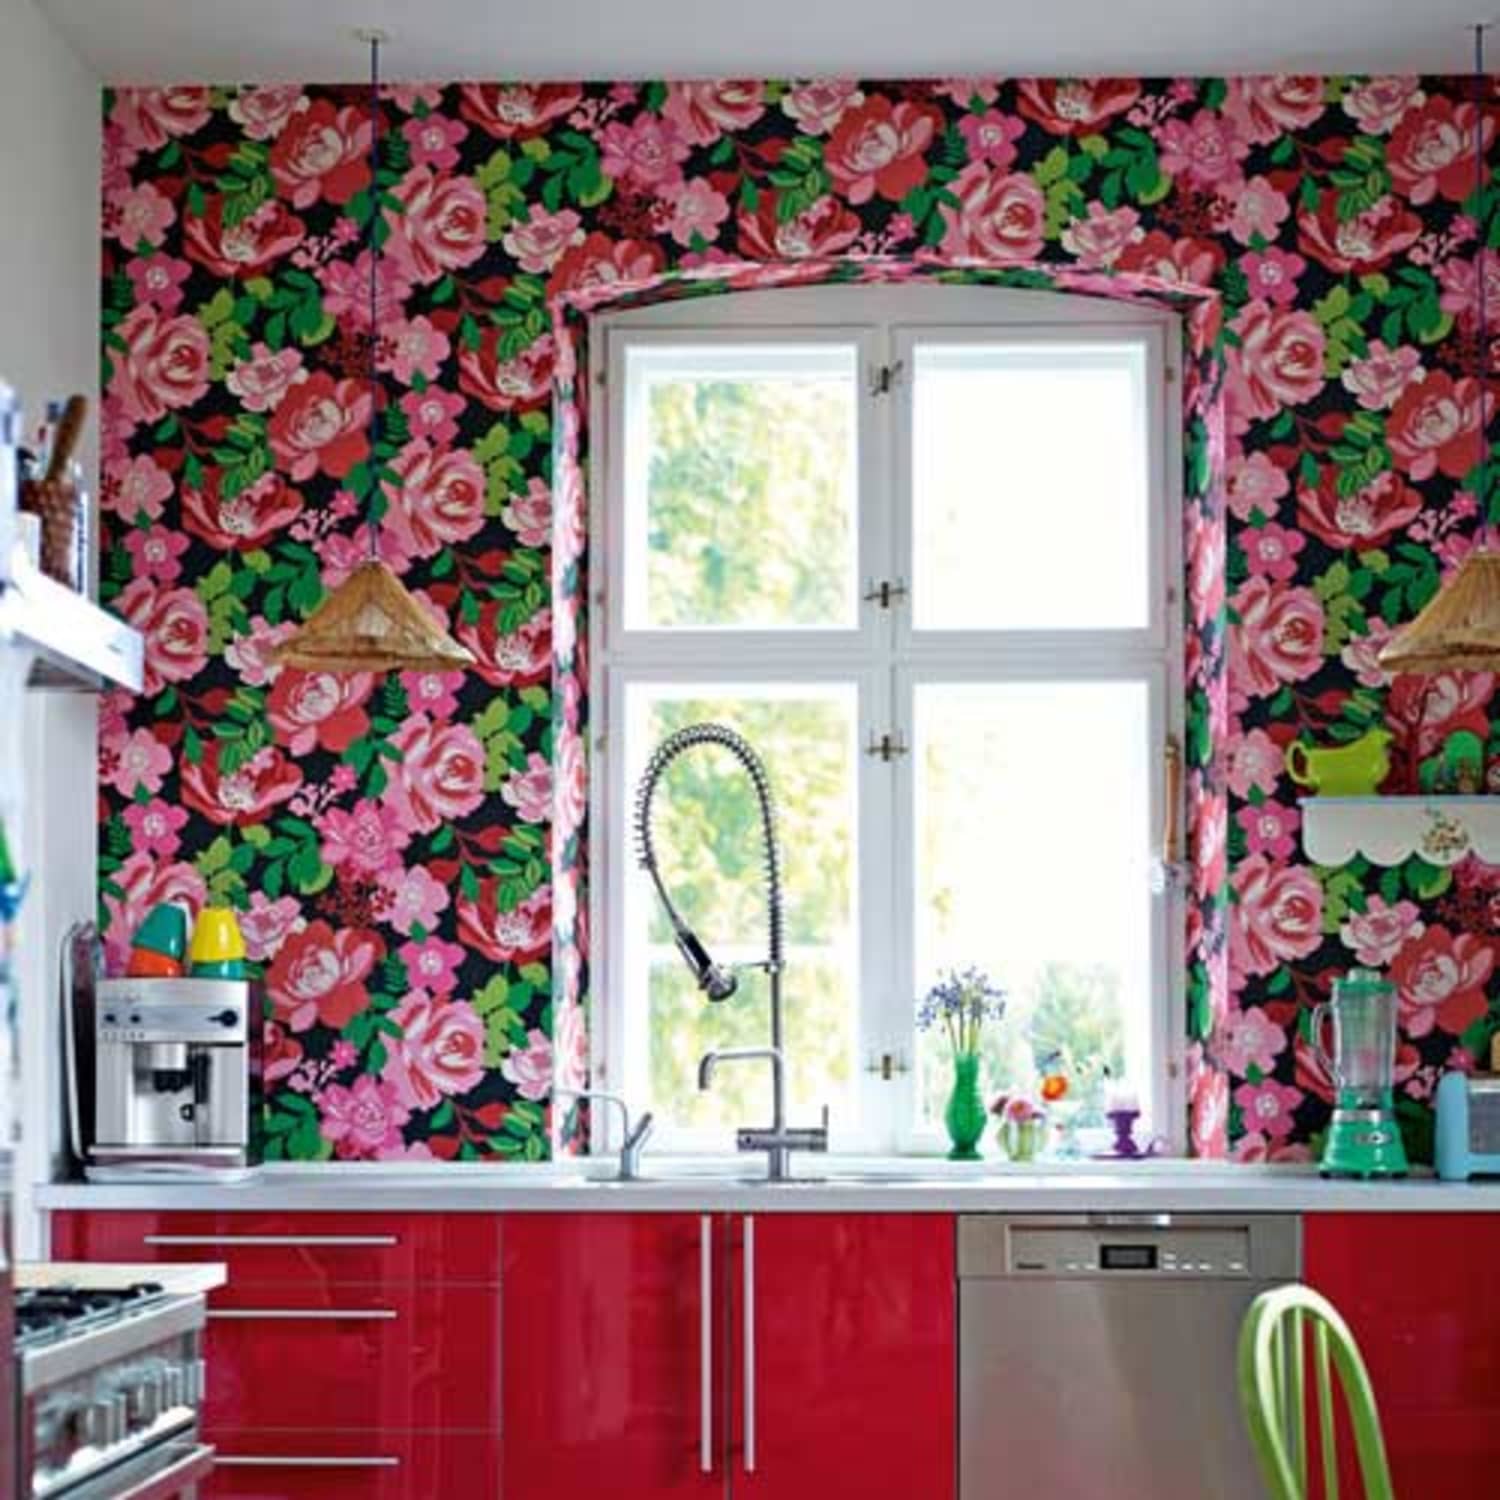 Hãy xem các hình ảnh nền tường nhà bếp màu hồng sáng để thấy sự tươi mới và phong cách năng động giữa không gian của bạn. Với màu sắc rực rỡ, sẽ khiến gia đình bạn cảm thấy năng lượng và yêu thích.